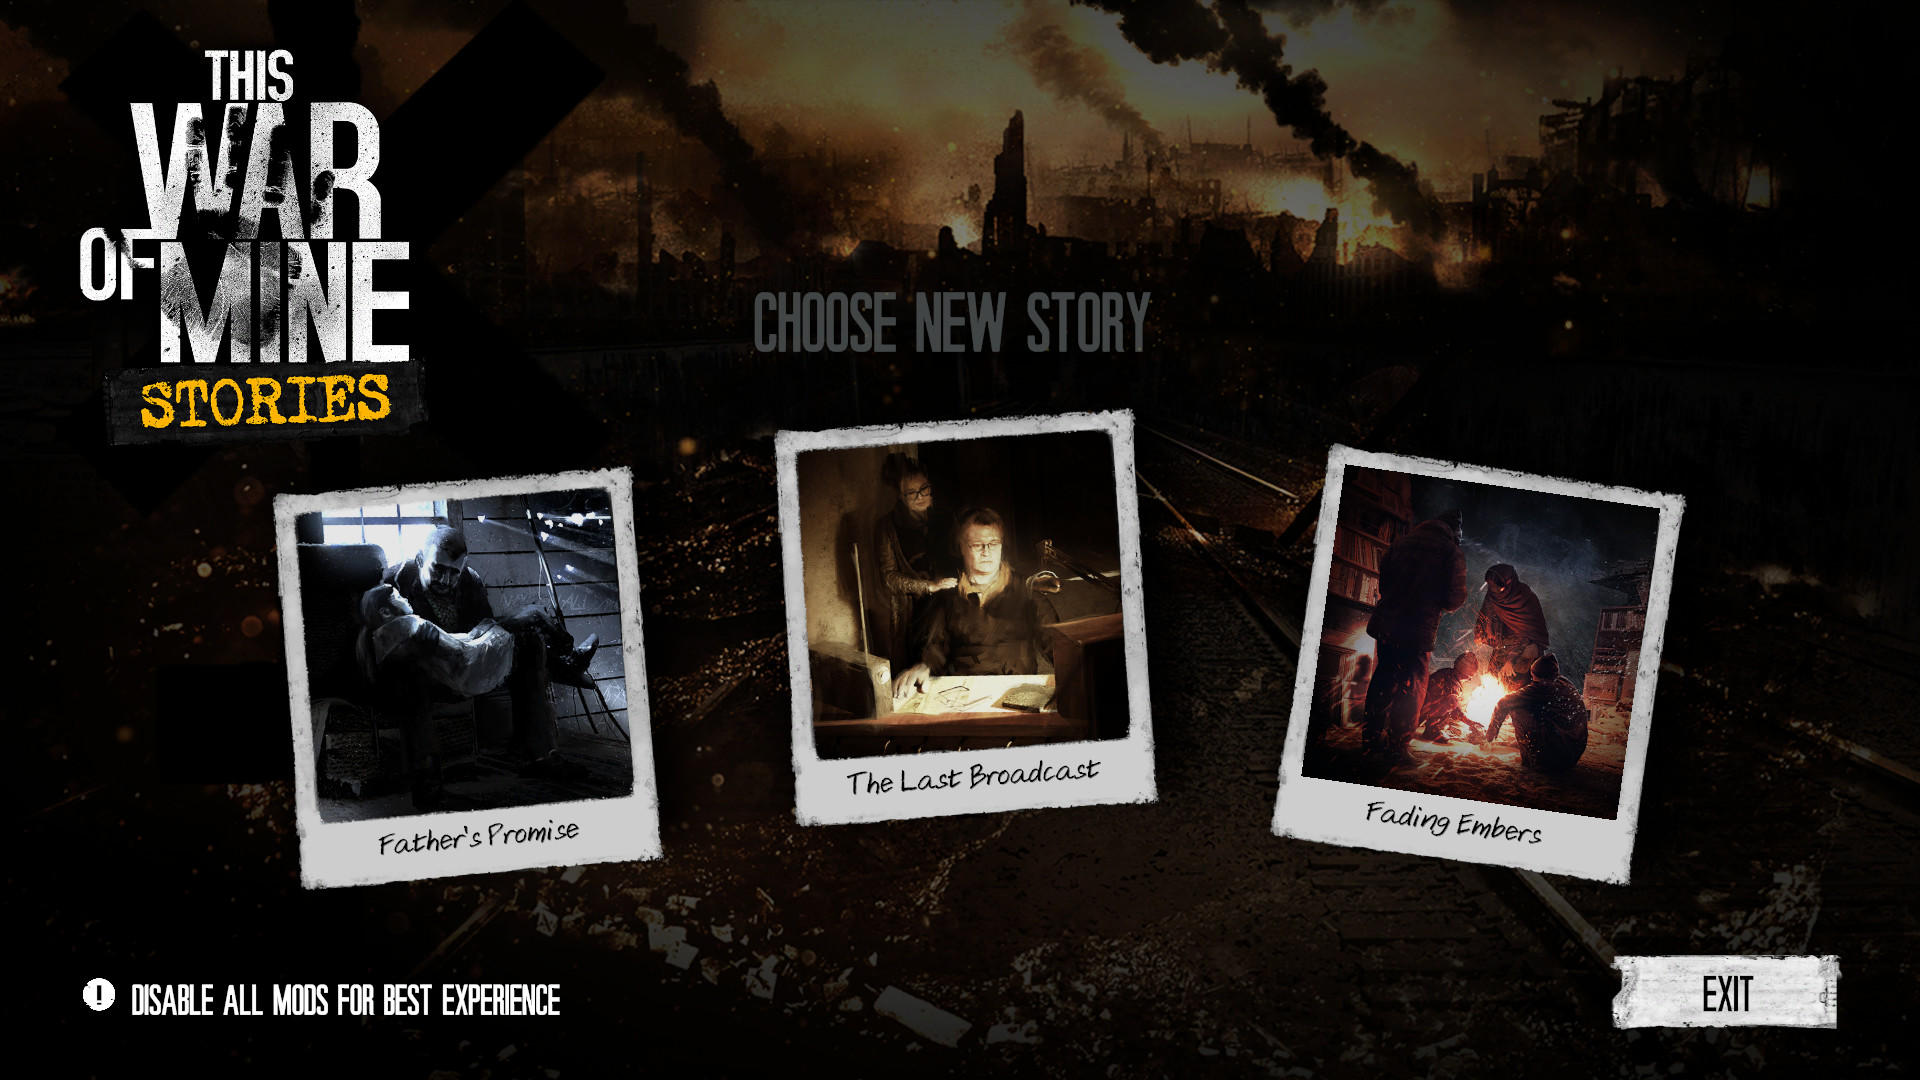 This War of Mine: Stories - Season Pass Featured Screenshot #1